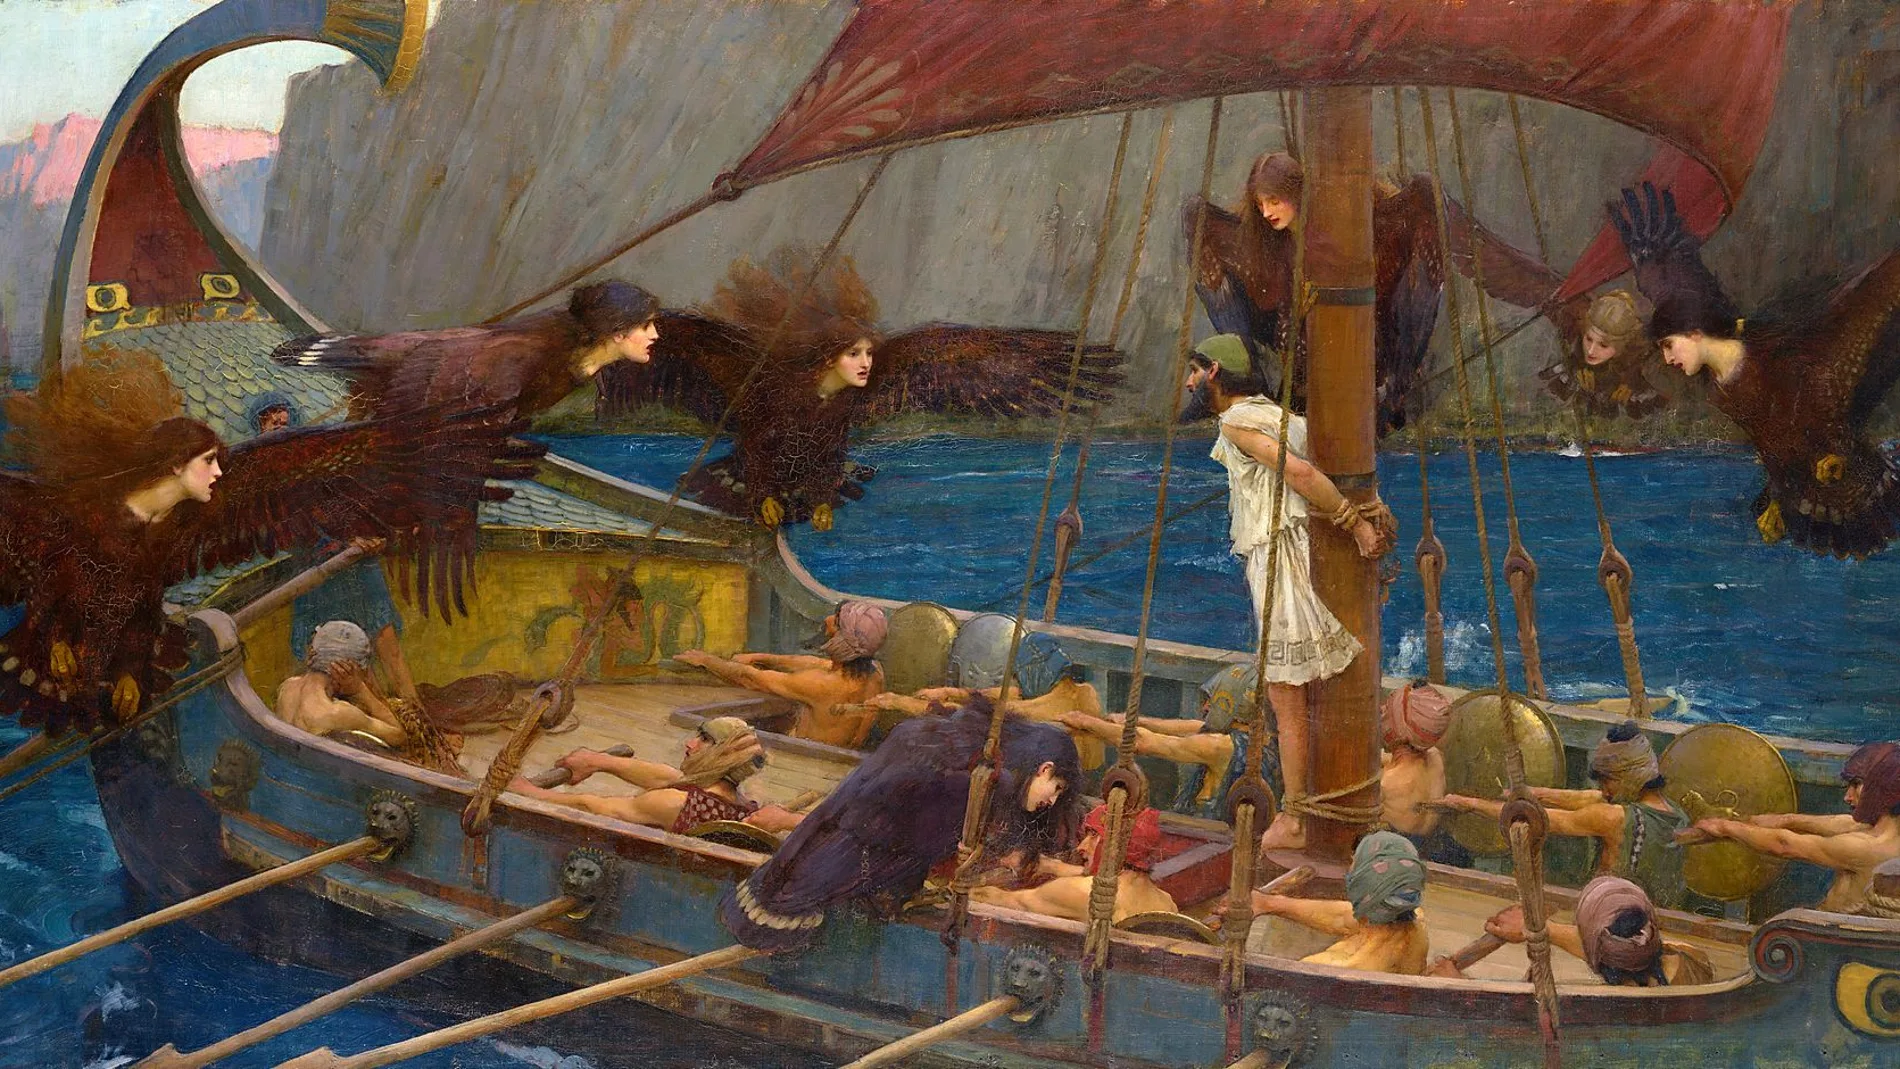 Ulises y las sirenas (1891). Historias de marineros del Mediterráneo como Ulises sirvieron para moldear la cultura de nuestro mar.